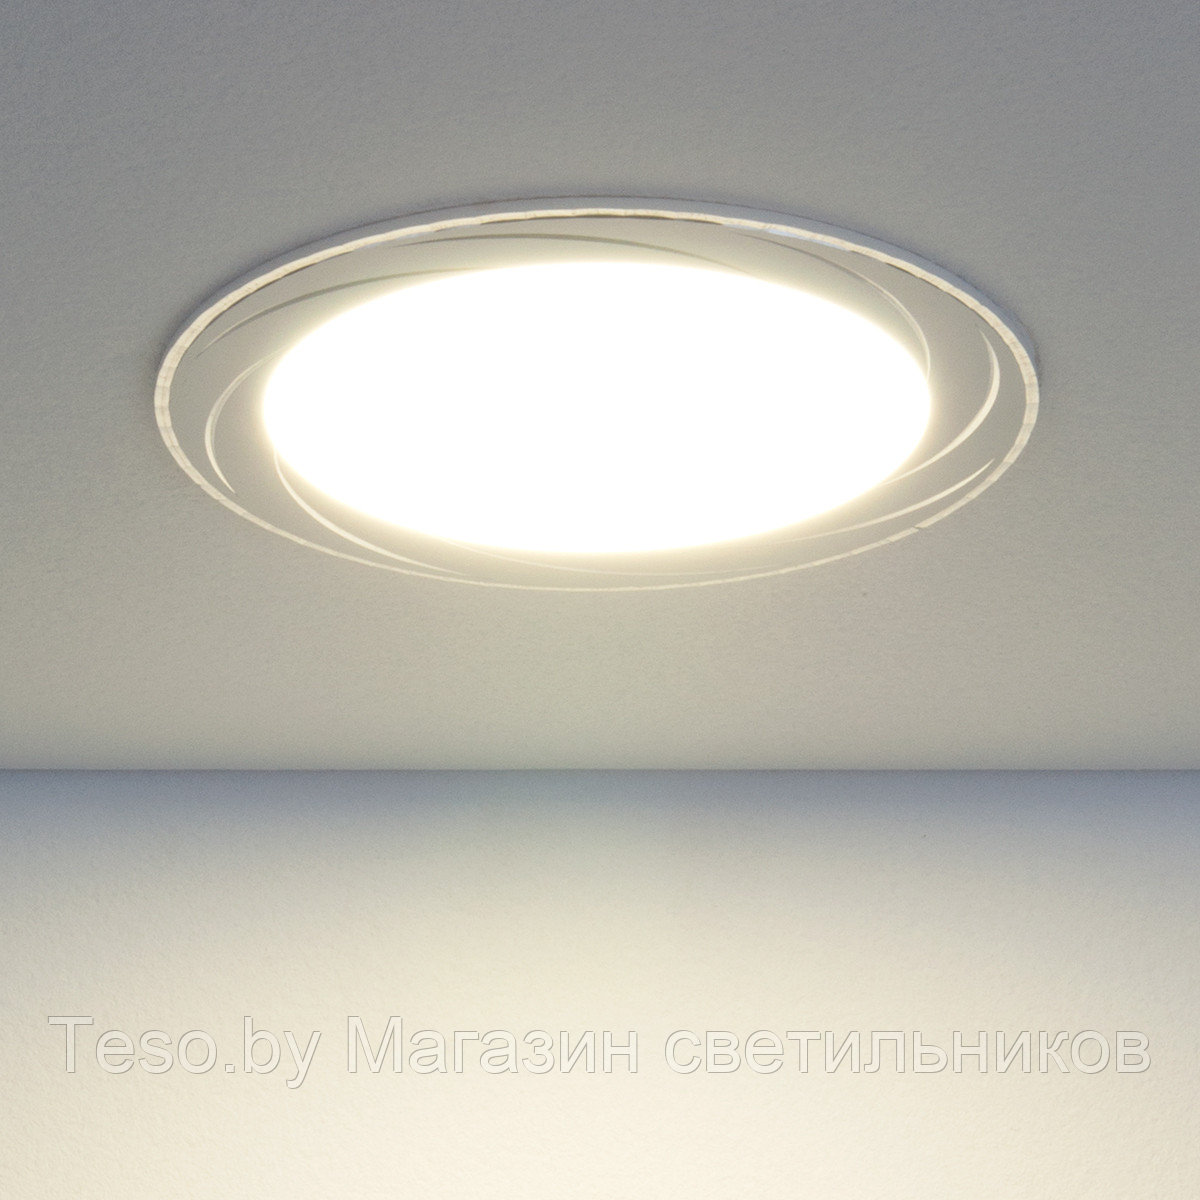 Встраиваемый потолочный светодиодный светильник DLR004 12W 4200K WH белый (немецкое качество) 